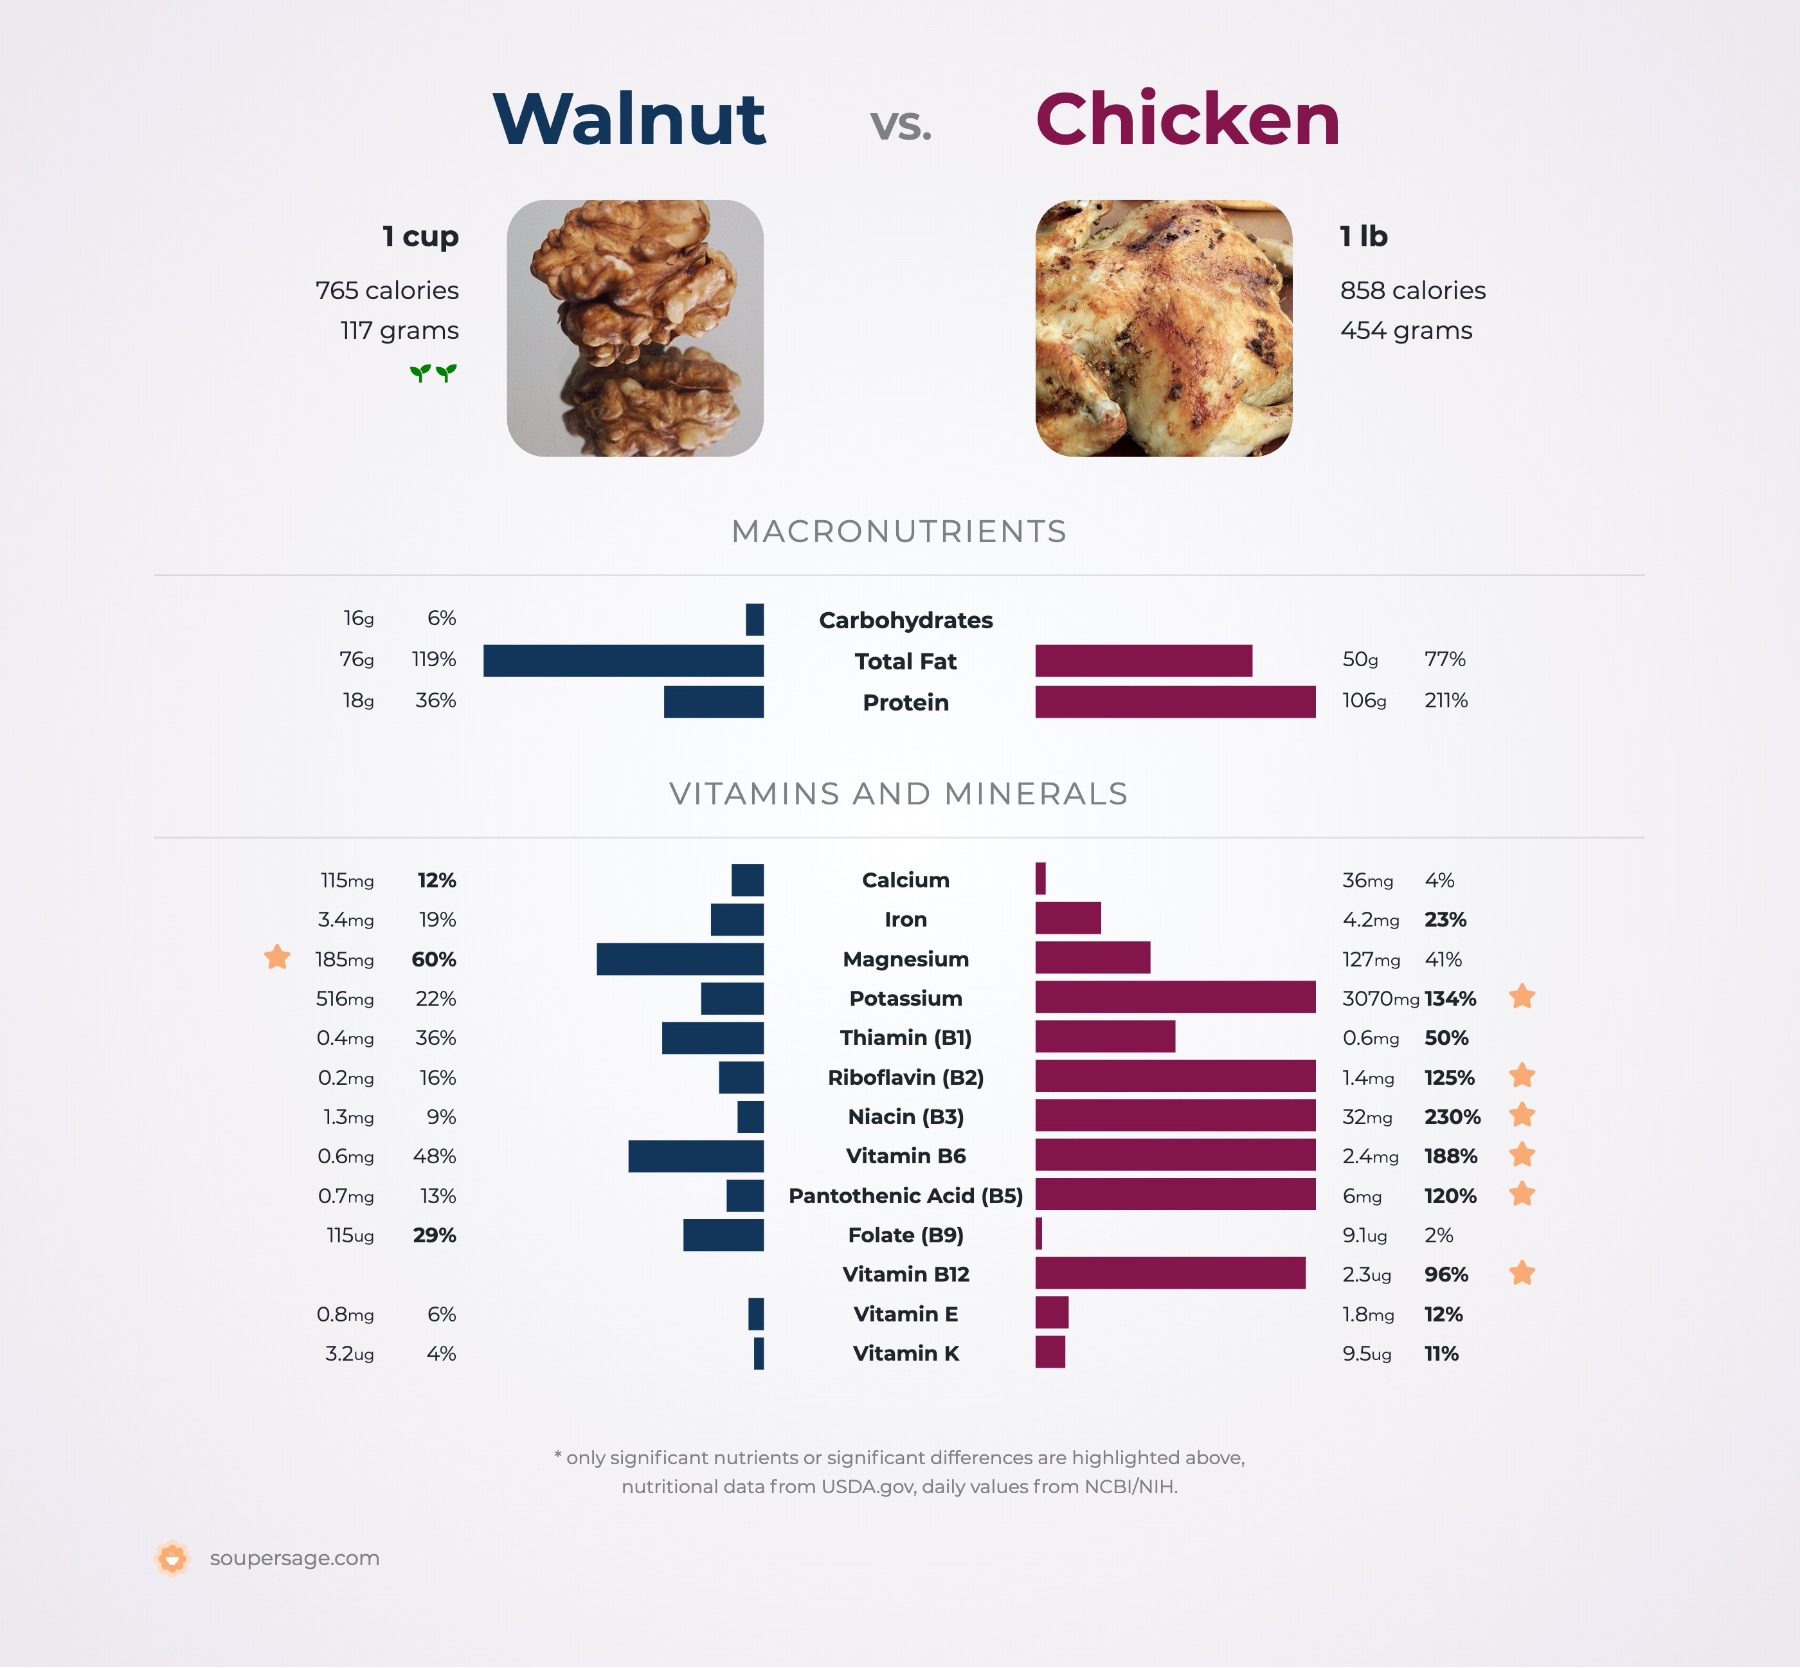 Nutrition Comparison: Peanuts Vs Chicken